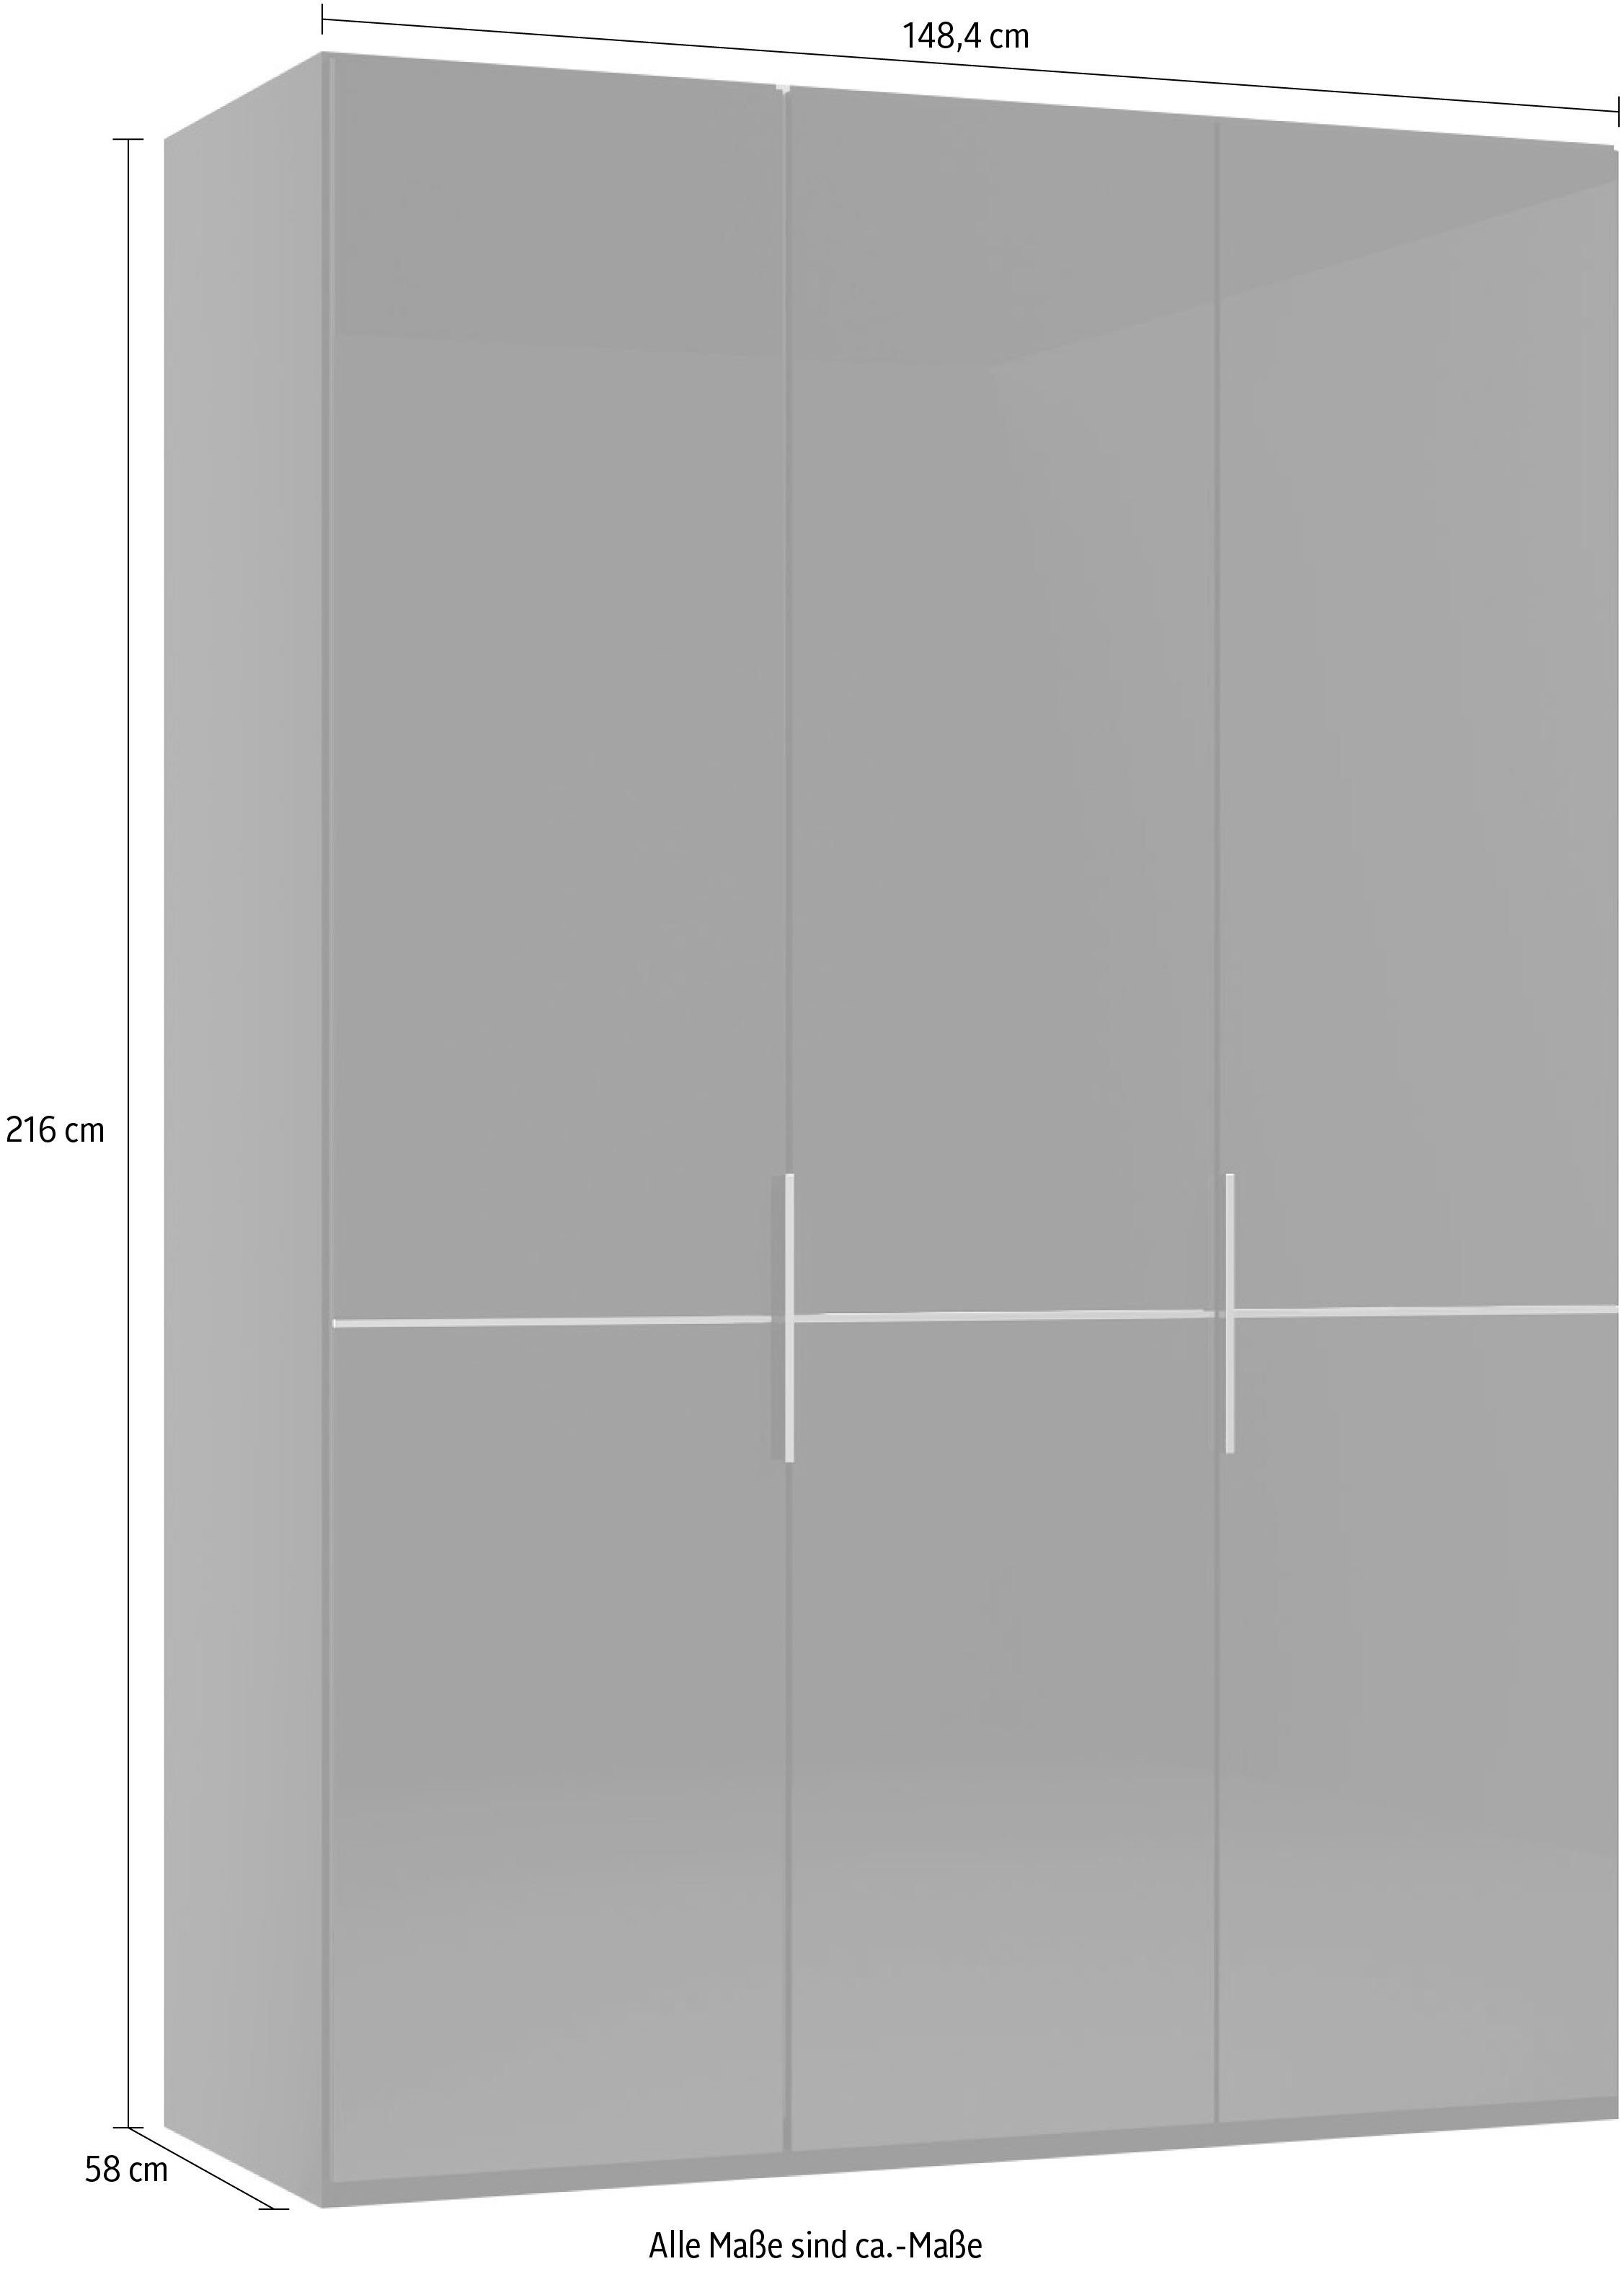 Imola Graphit und Chrom M by GALLERY Kleiderstangen,mit Glastüren in branded Aufleistung Musterring W Einlegeböden Drehtürenschrank und